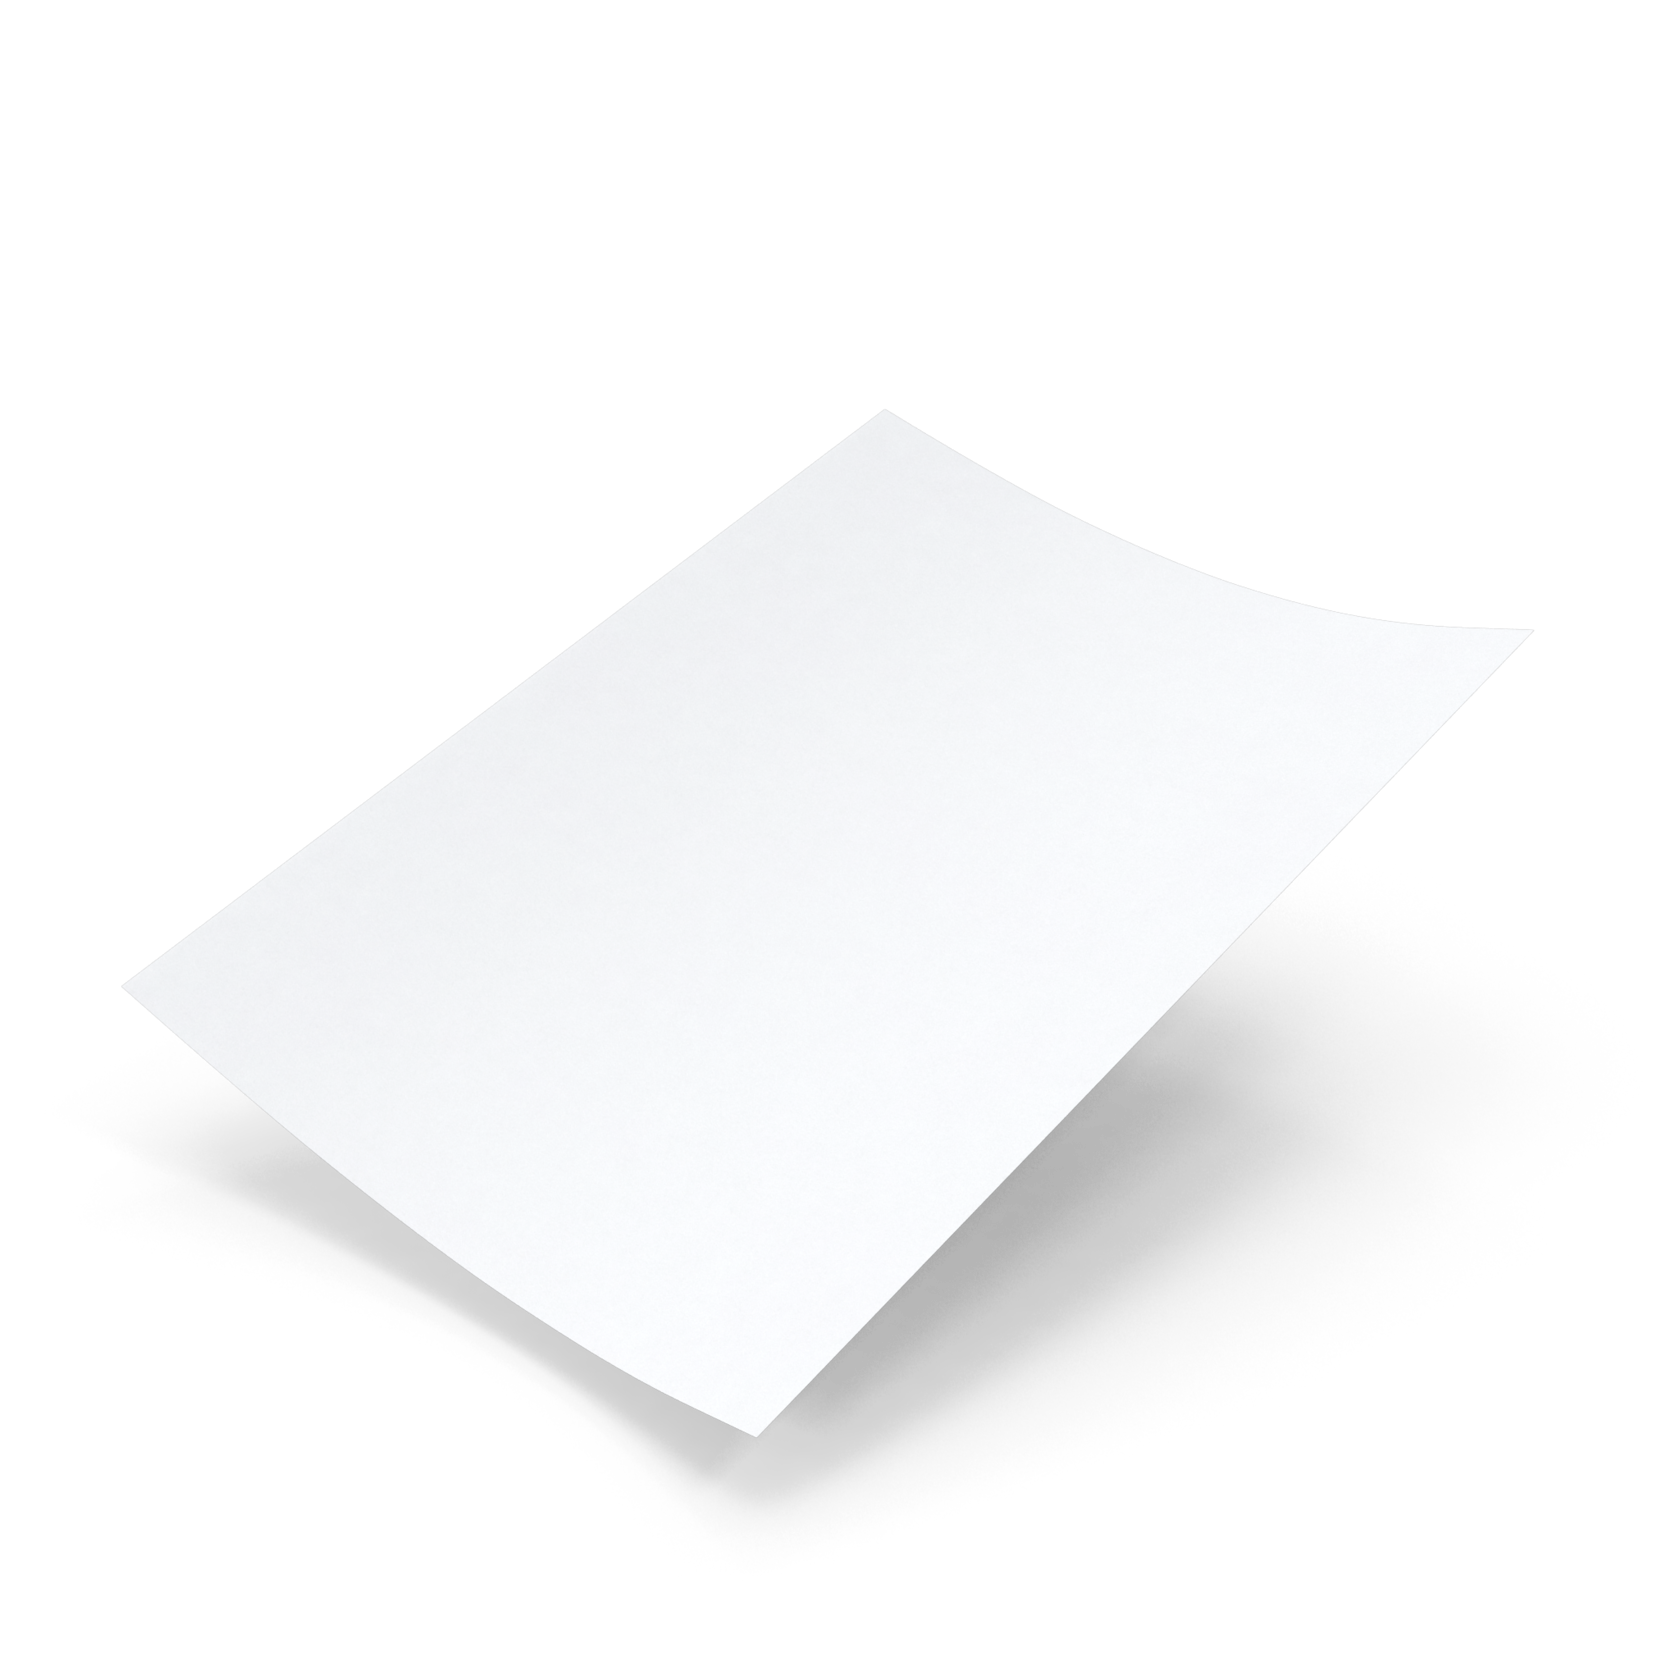 Sheet of paper. Лист бумаги. Бумажный лист. Мелованная бумага лист. Лист бумаги а4.